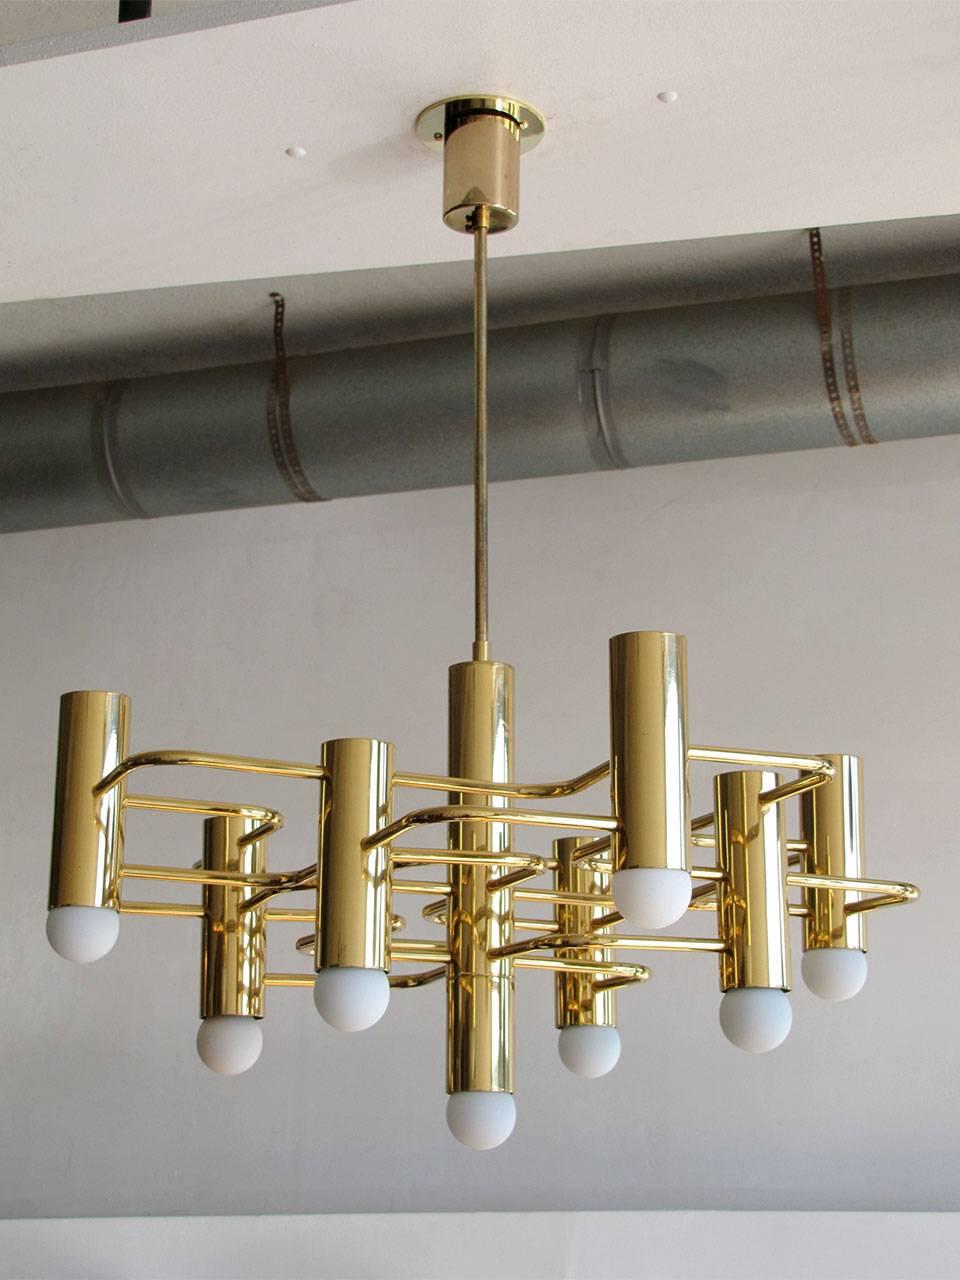 Stunning nine-light brass chandelier by Gaetano Sciolari for Belgian producer Boulanger.